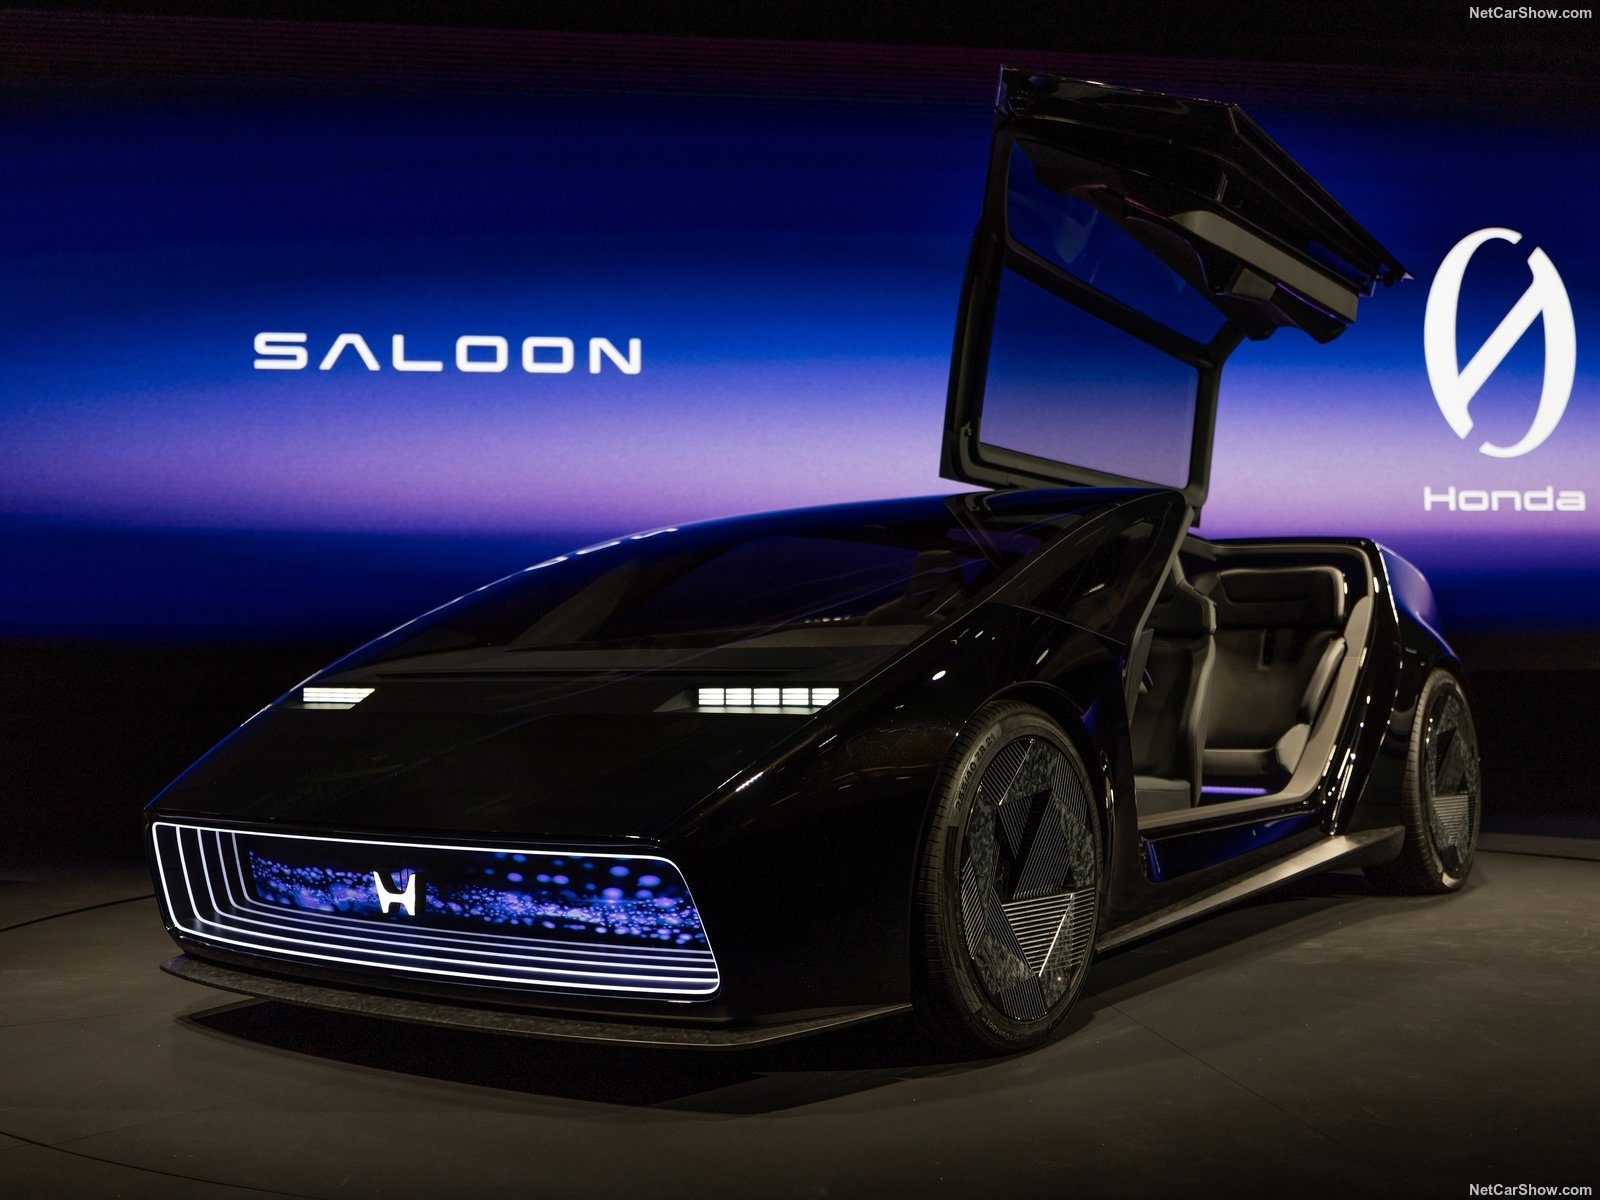 Scissor door of Honda Saloon concept.